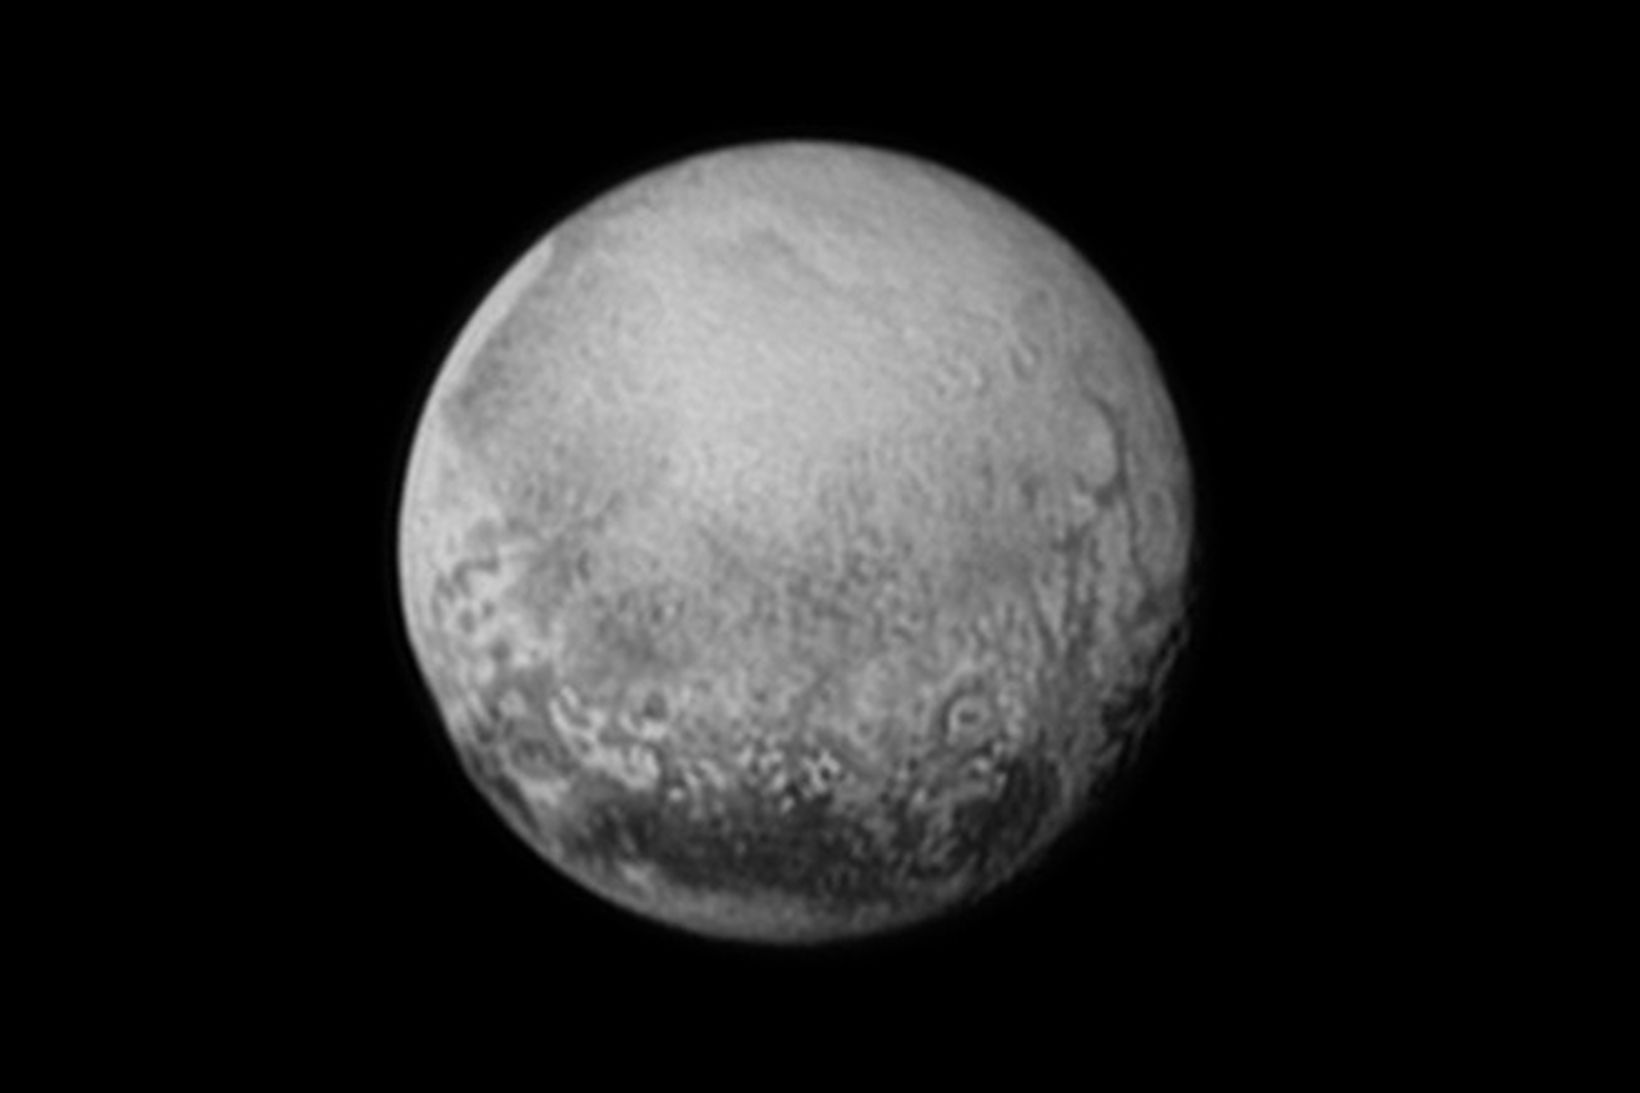 Mynd sem New Horizons tók af Plútó laugardaginn 11. júlí.